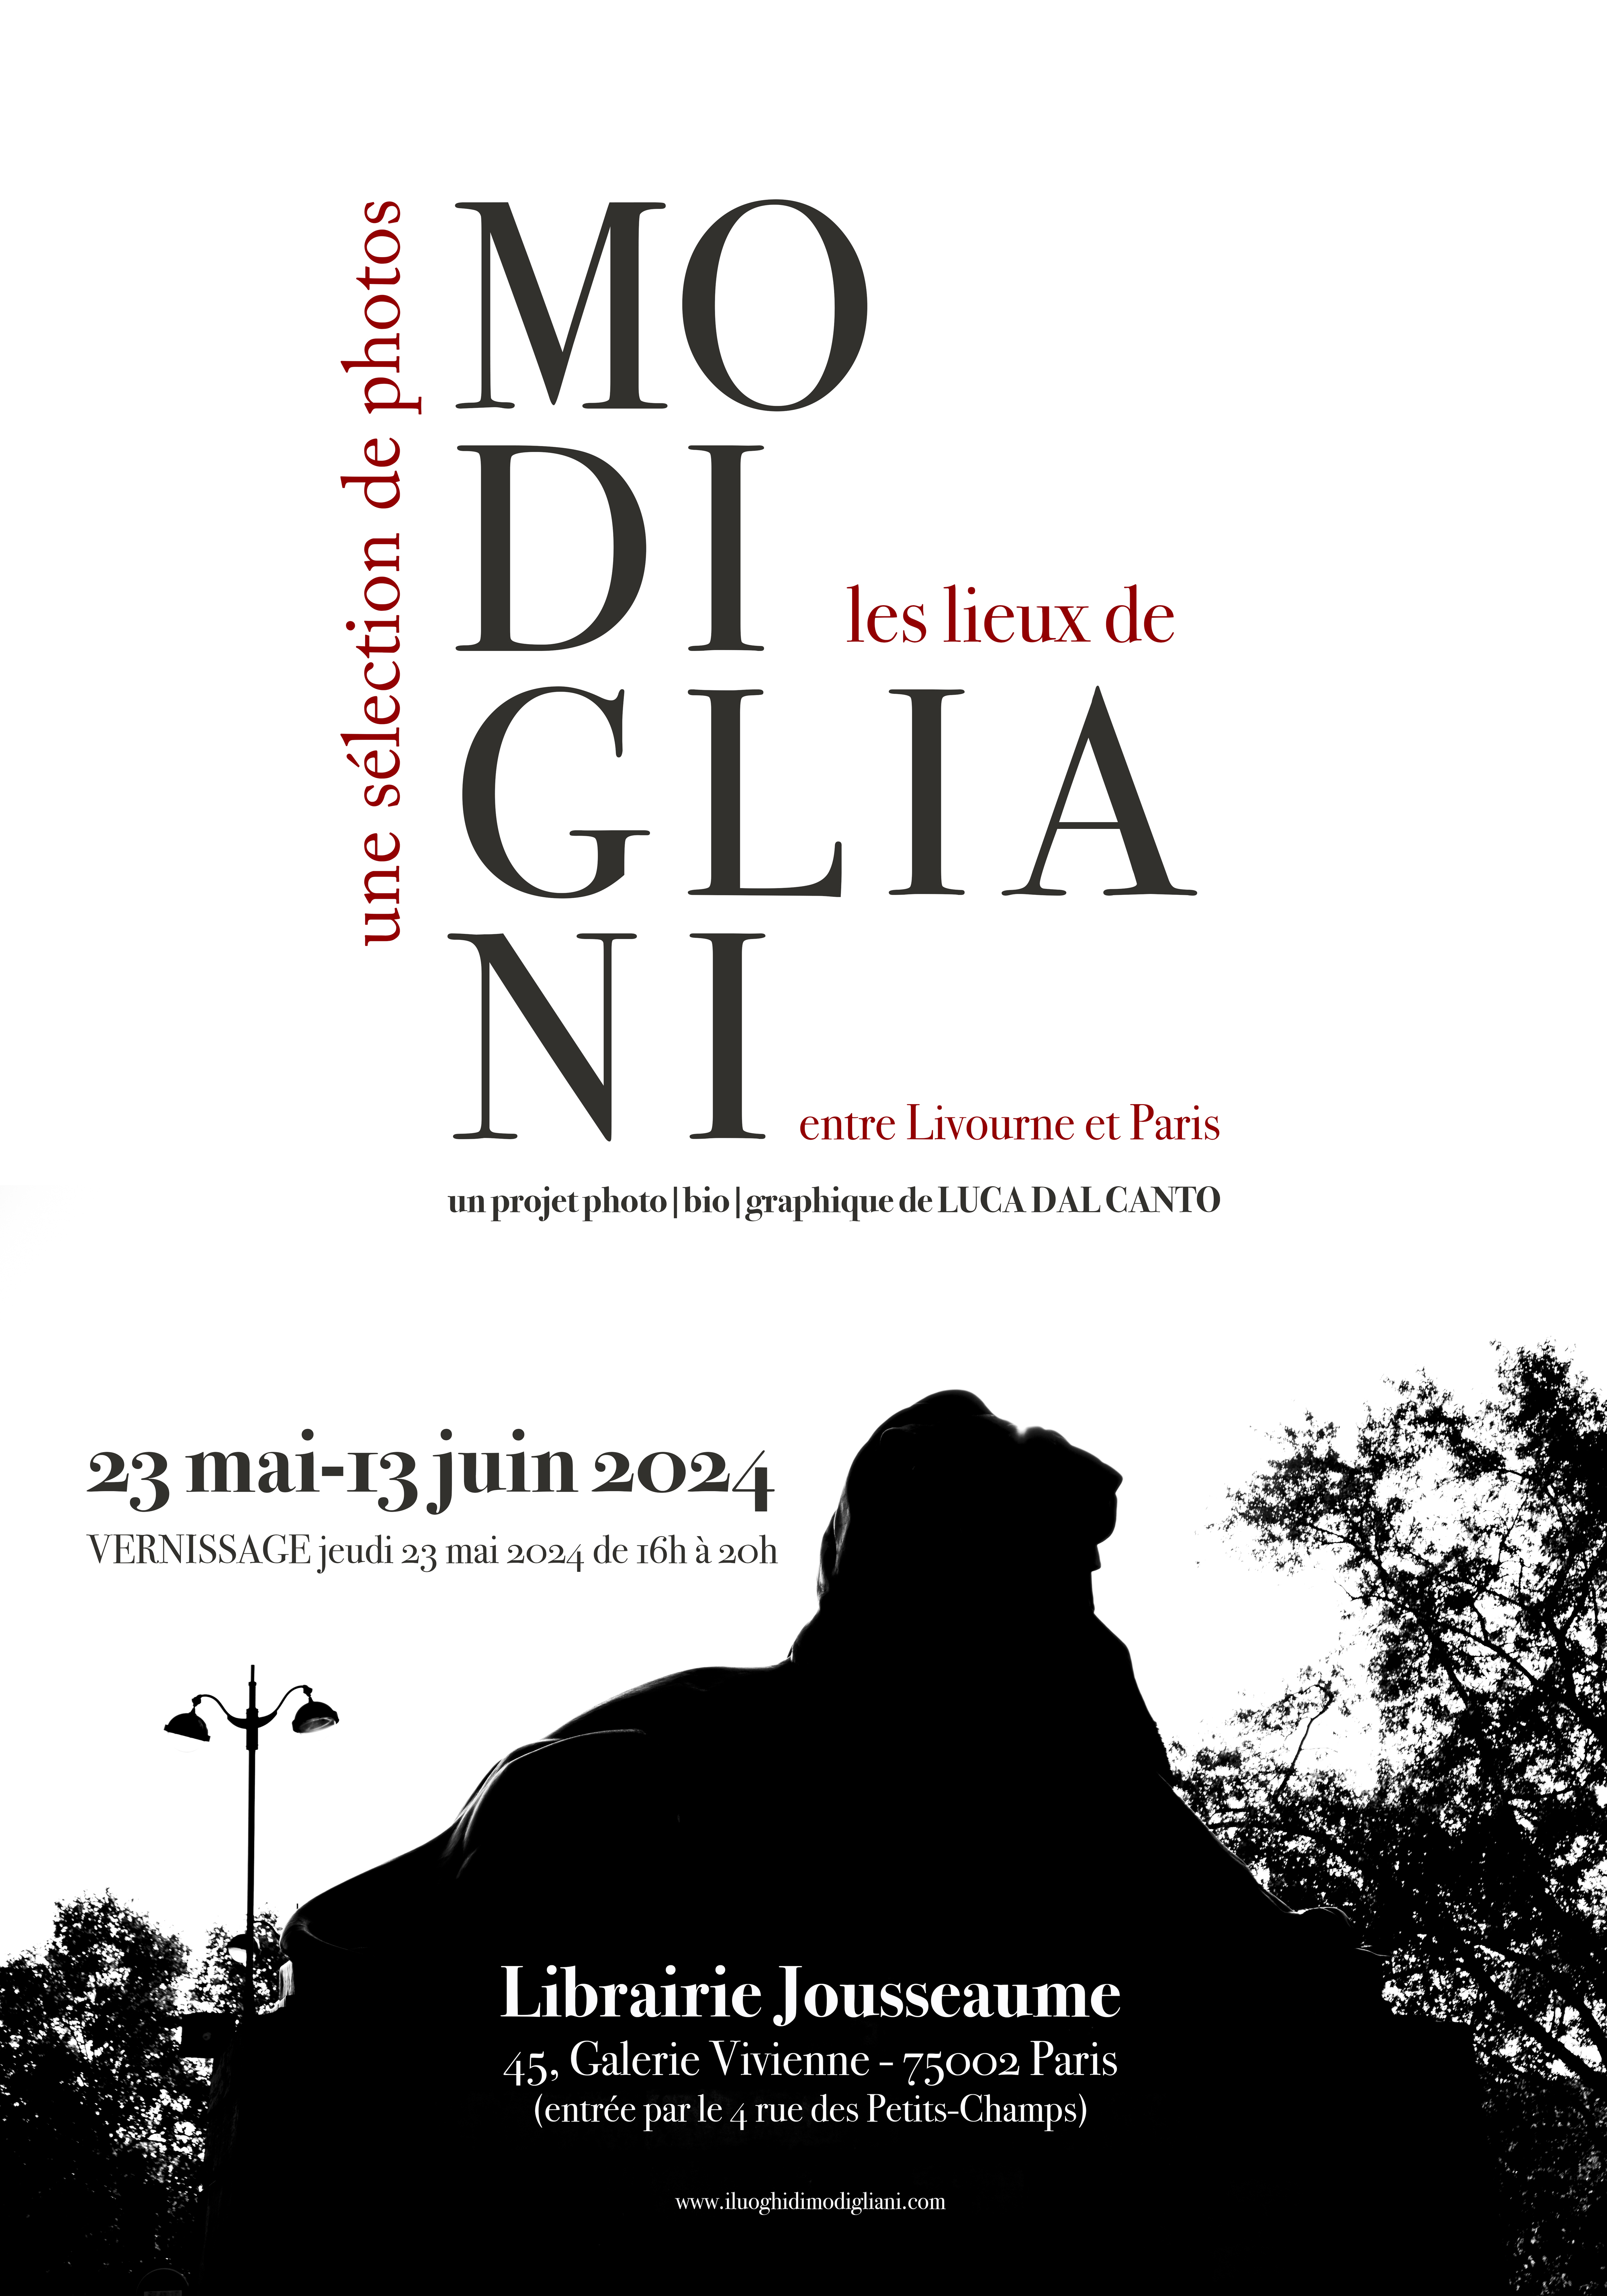 Les lieux de Modigliani entre Livourne et Paris